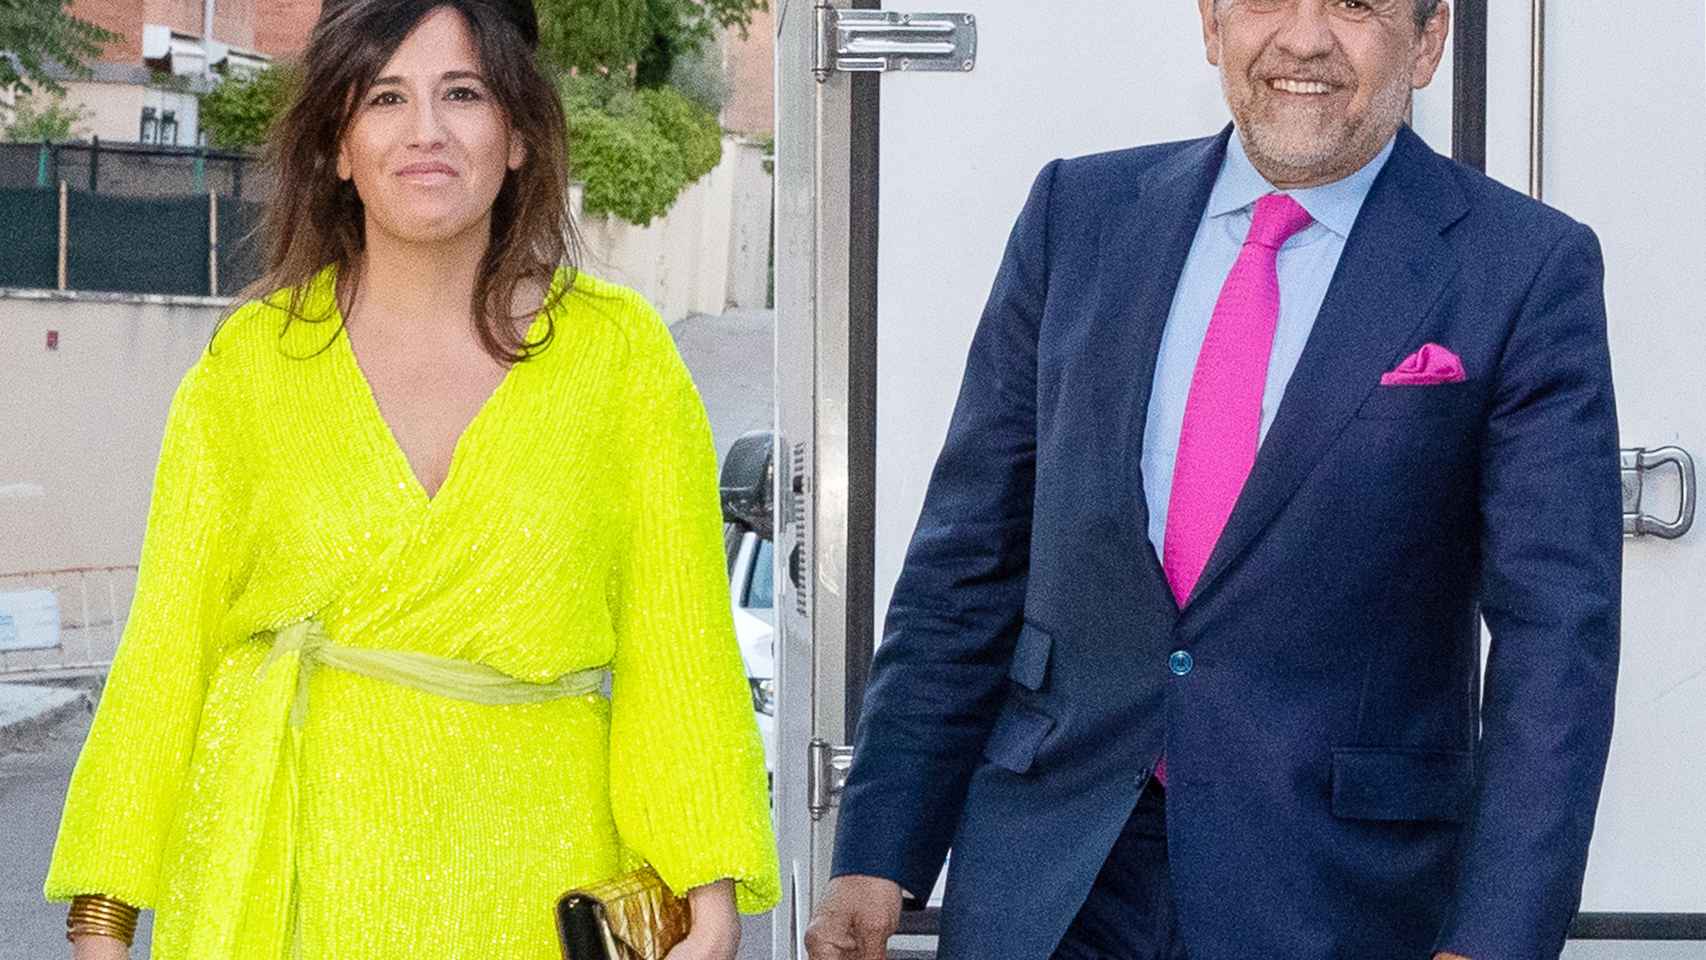 Jaime Martínez-Bordiú y Marta Fernández en una imagen de archivo fechada en junio de 2019.